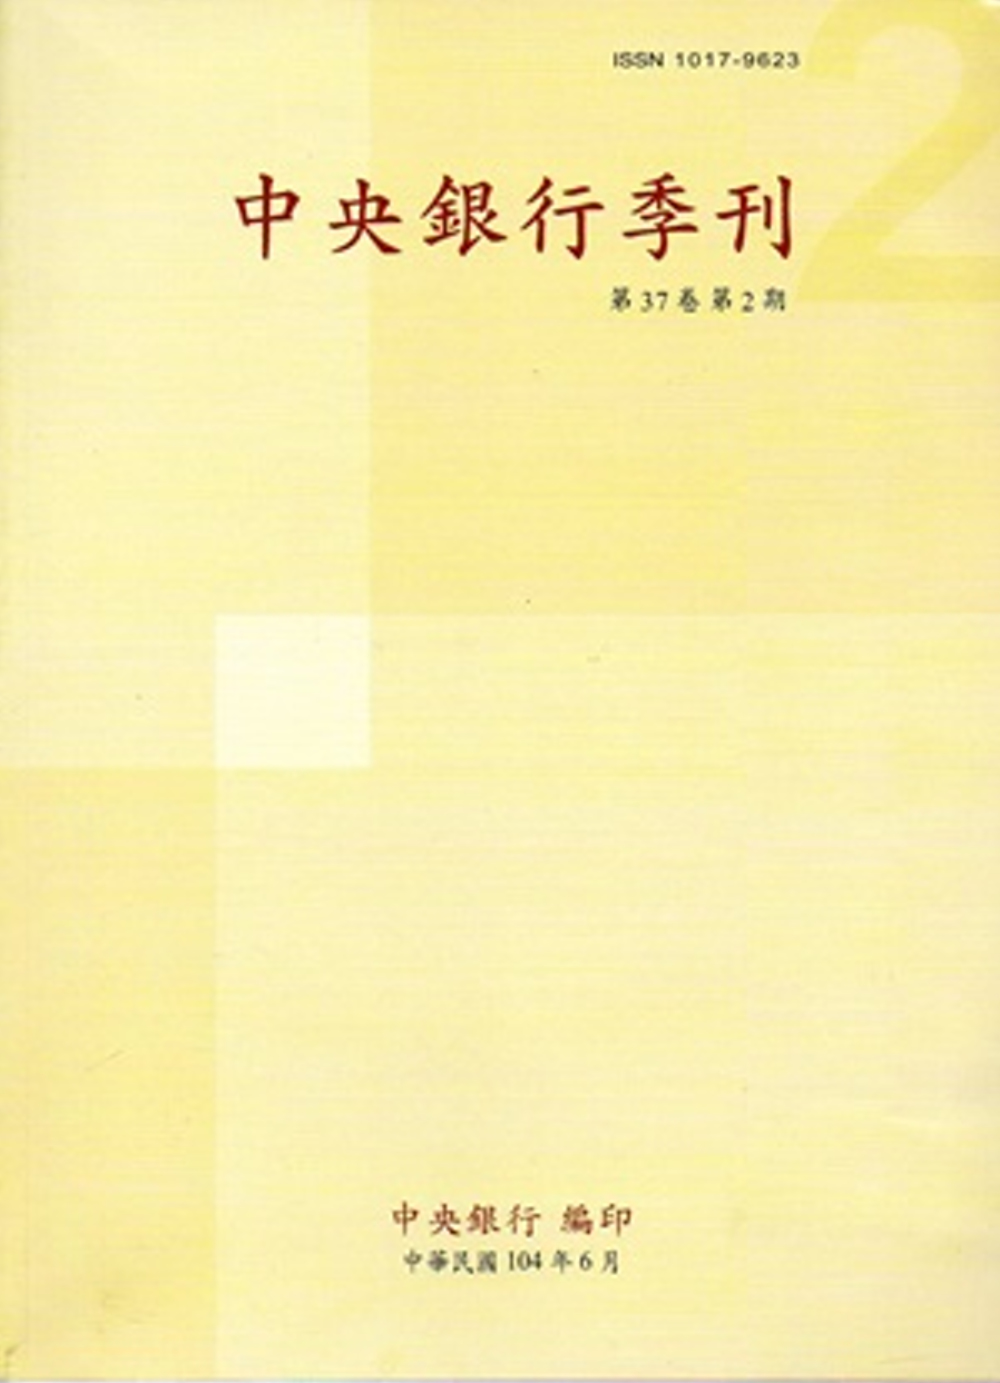 中央銀行季刊37卷2期(104.06)